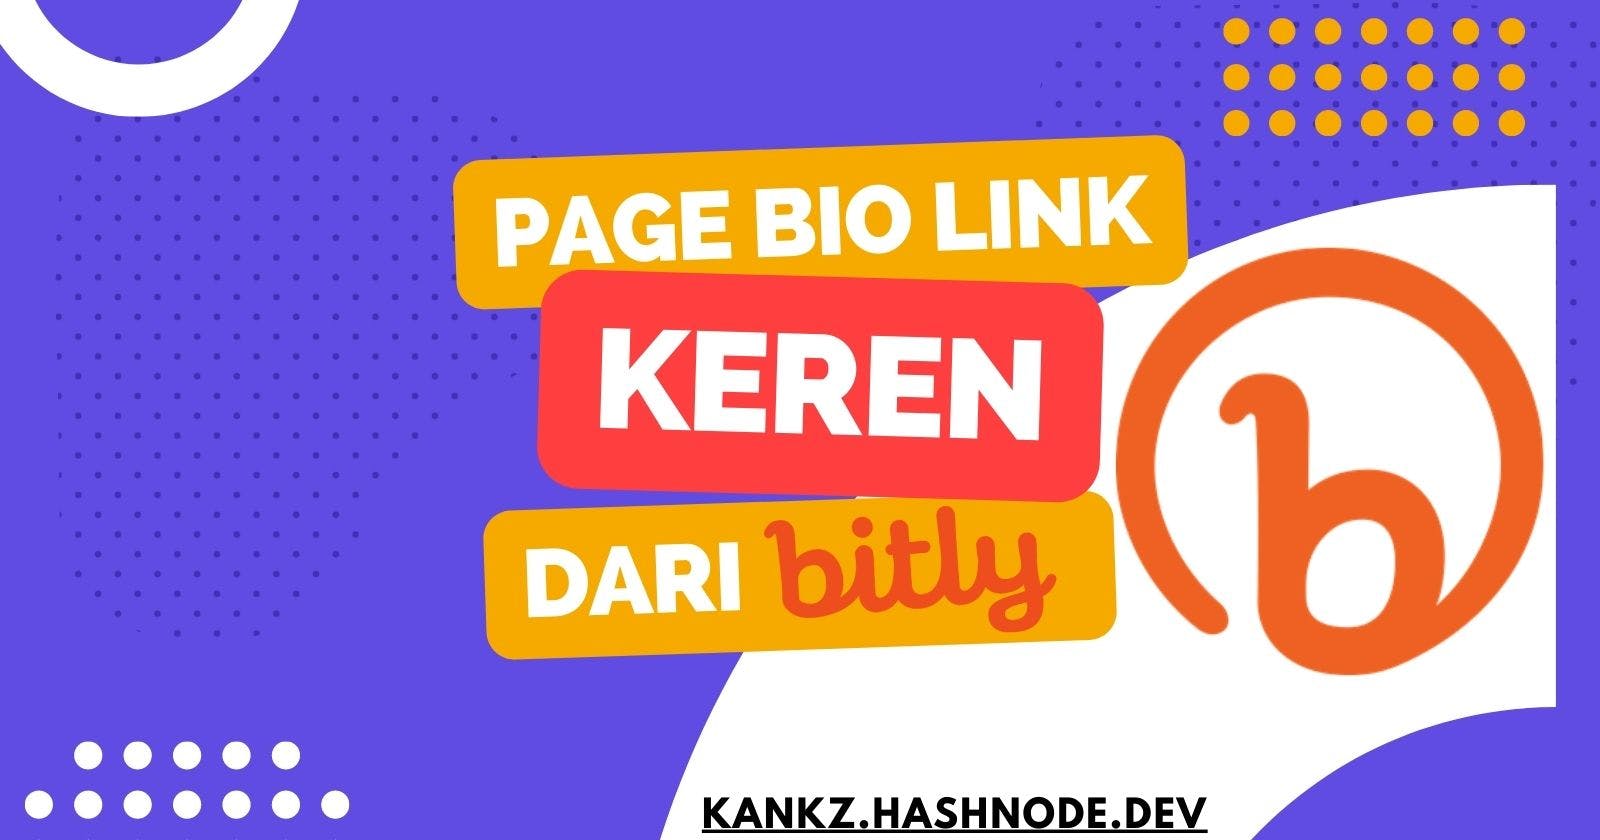 Cara Membuat Page Bio Link Menggunakan Bit.ly